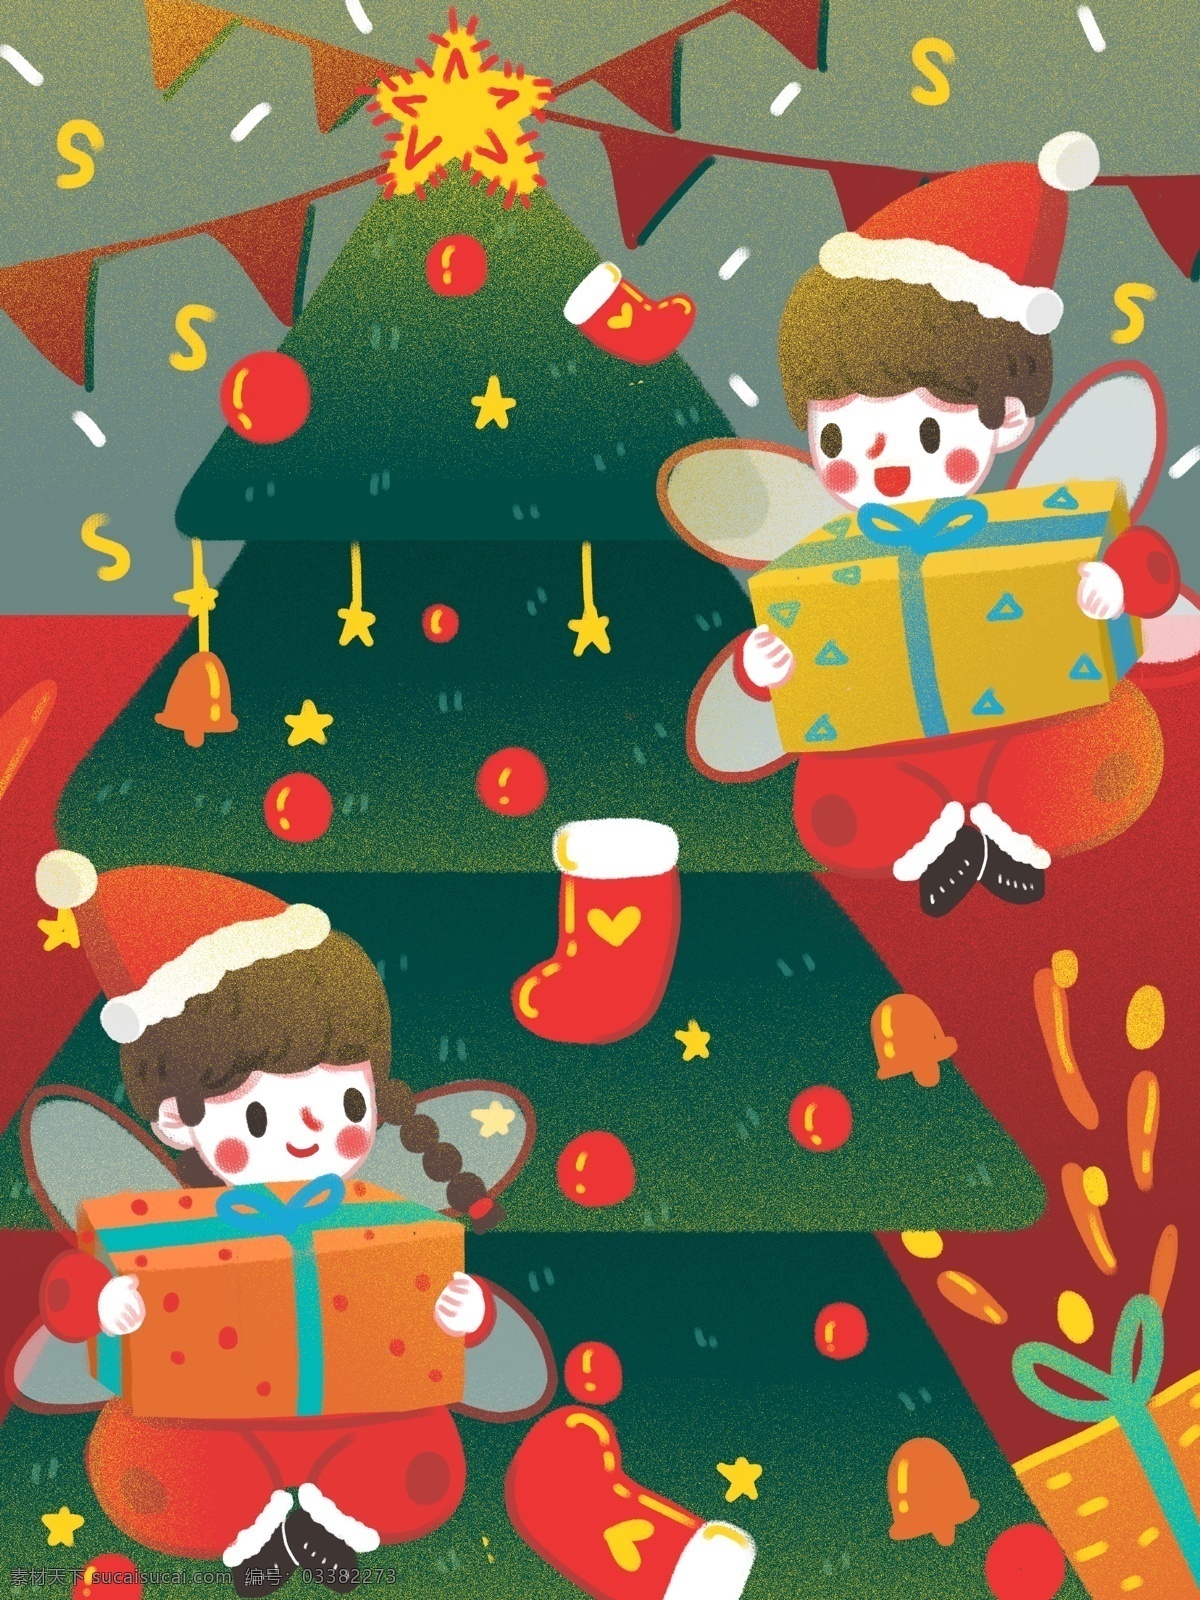 治愈 圣诞节 小 天使 圣诞树 前 送礼 物 装饰 可爱 礼物 星星 圣诞 圣诞精灵 圣诞帽 娃子 铃铛 彩旗 圣诞老人 娃娃 精灵 男孩女孩 礼炮